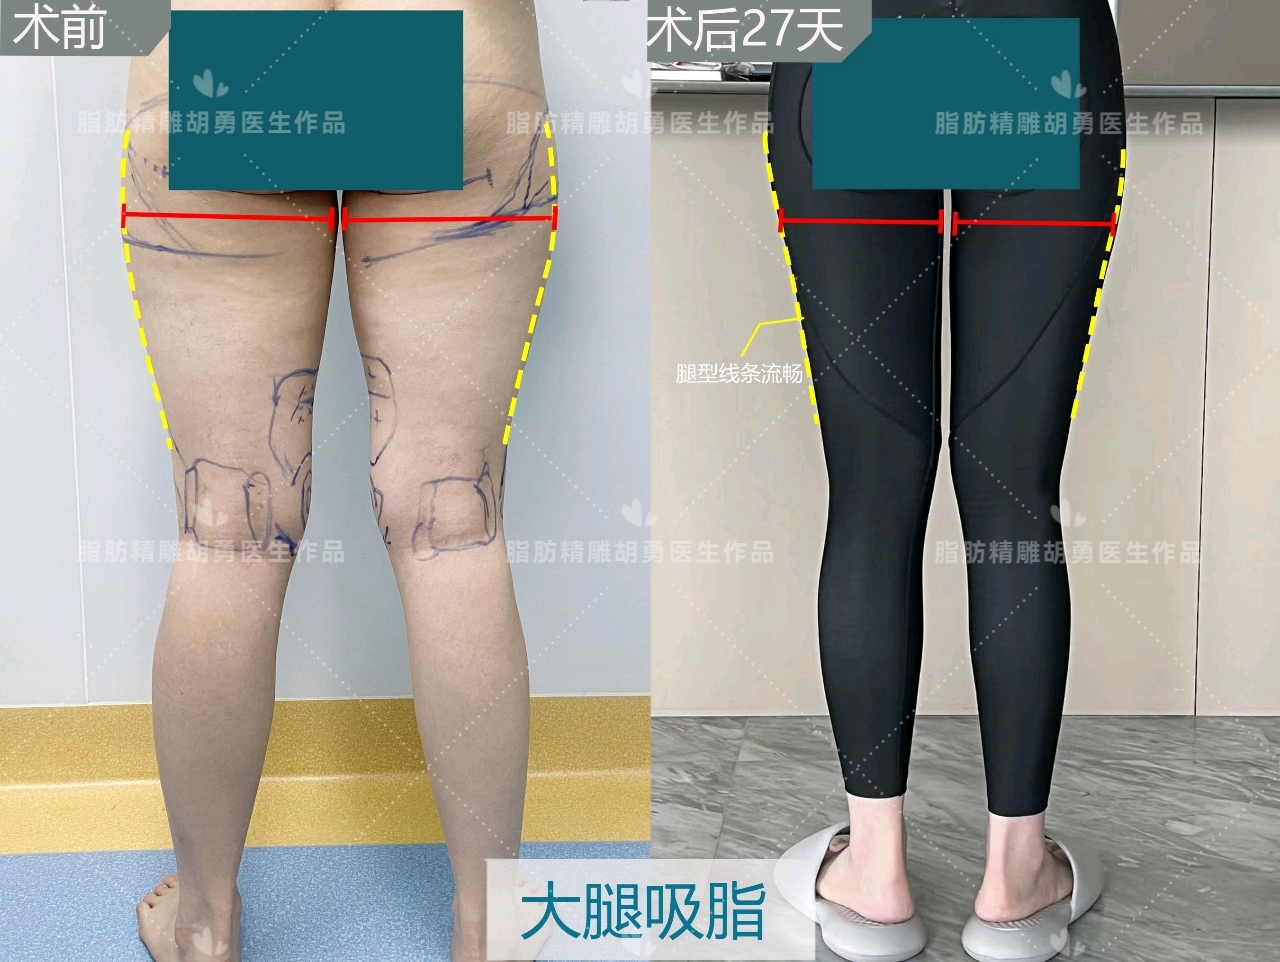 【直腿塑形】宝丽太大腿环吸修复+假跨+膝内侧5个月反馈 - 知乎